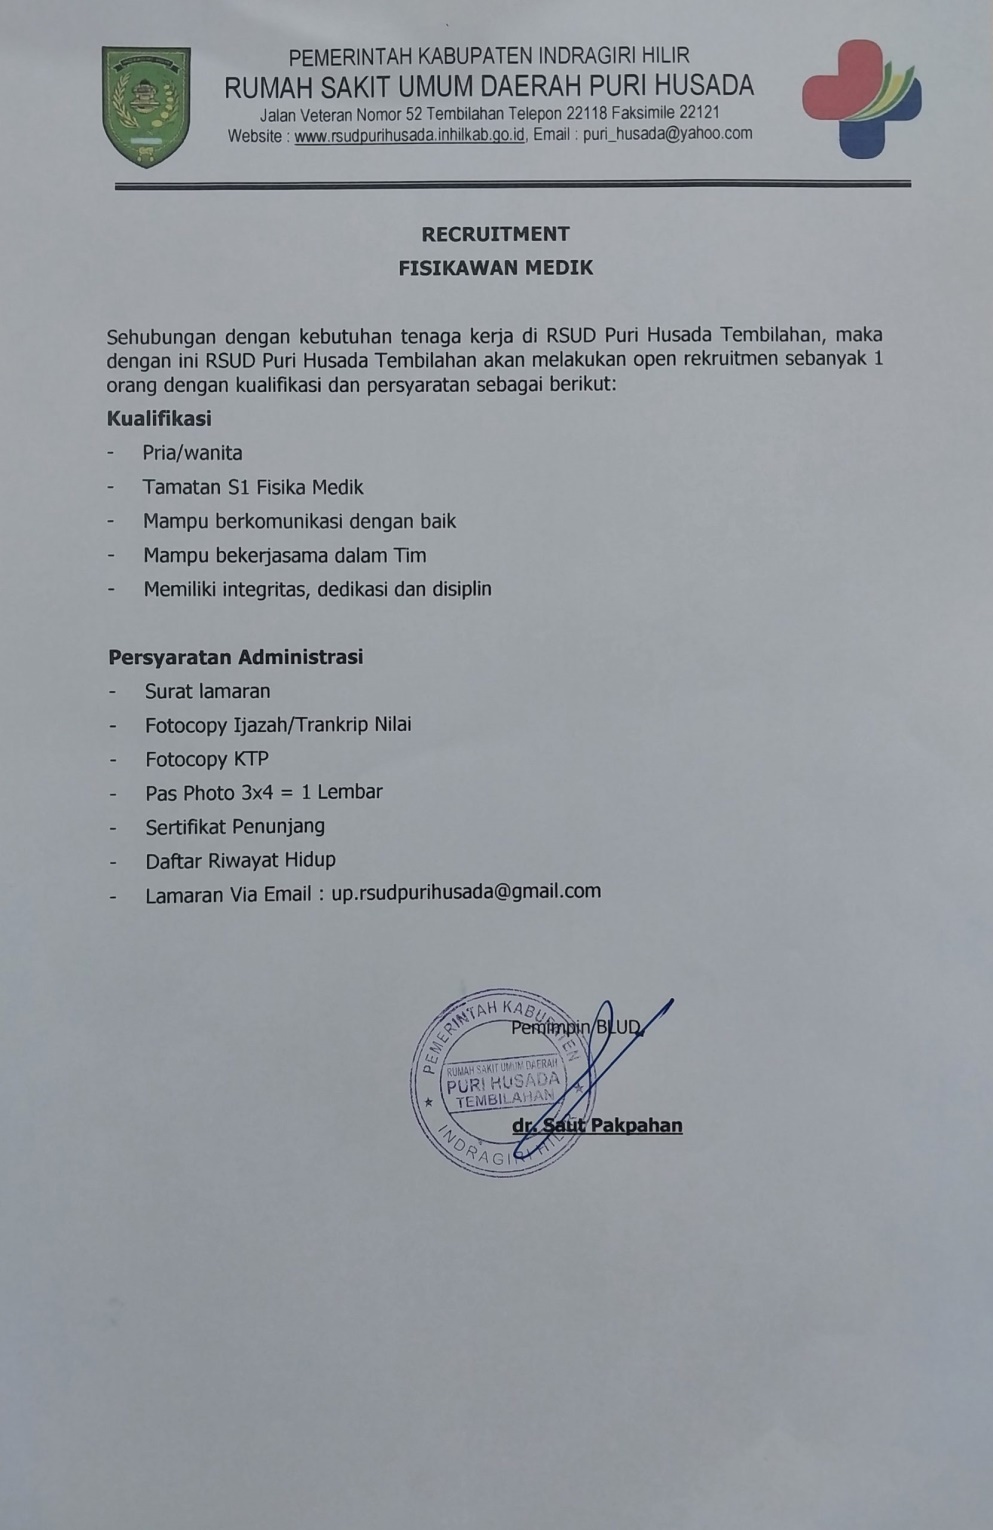 Recruitment Tenaga Fisikawan Medik